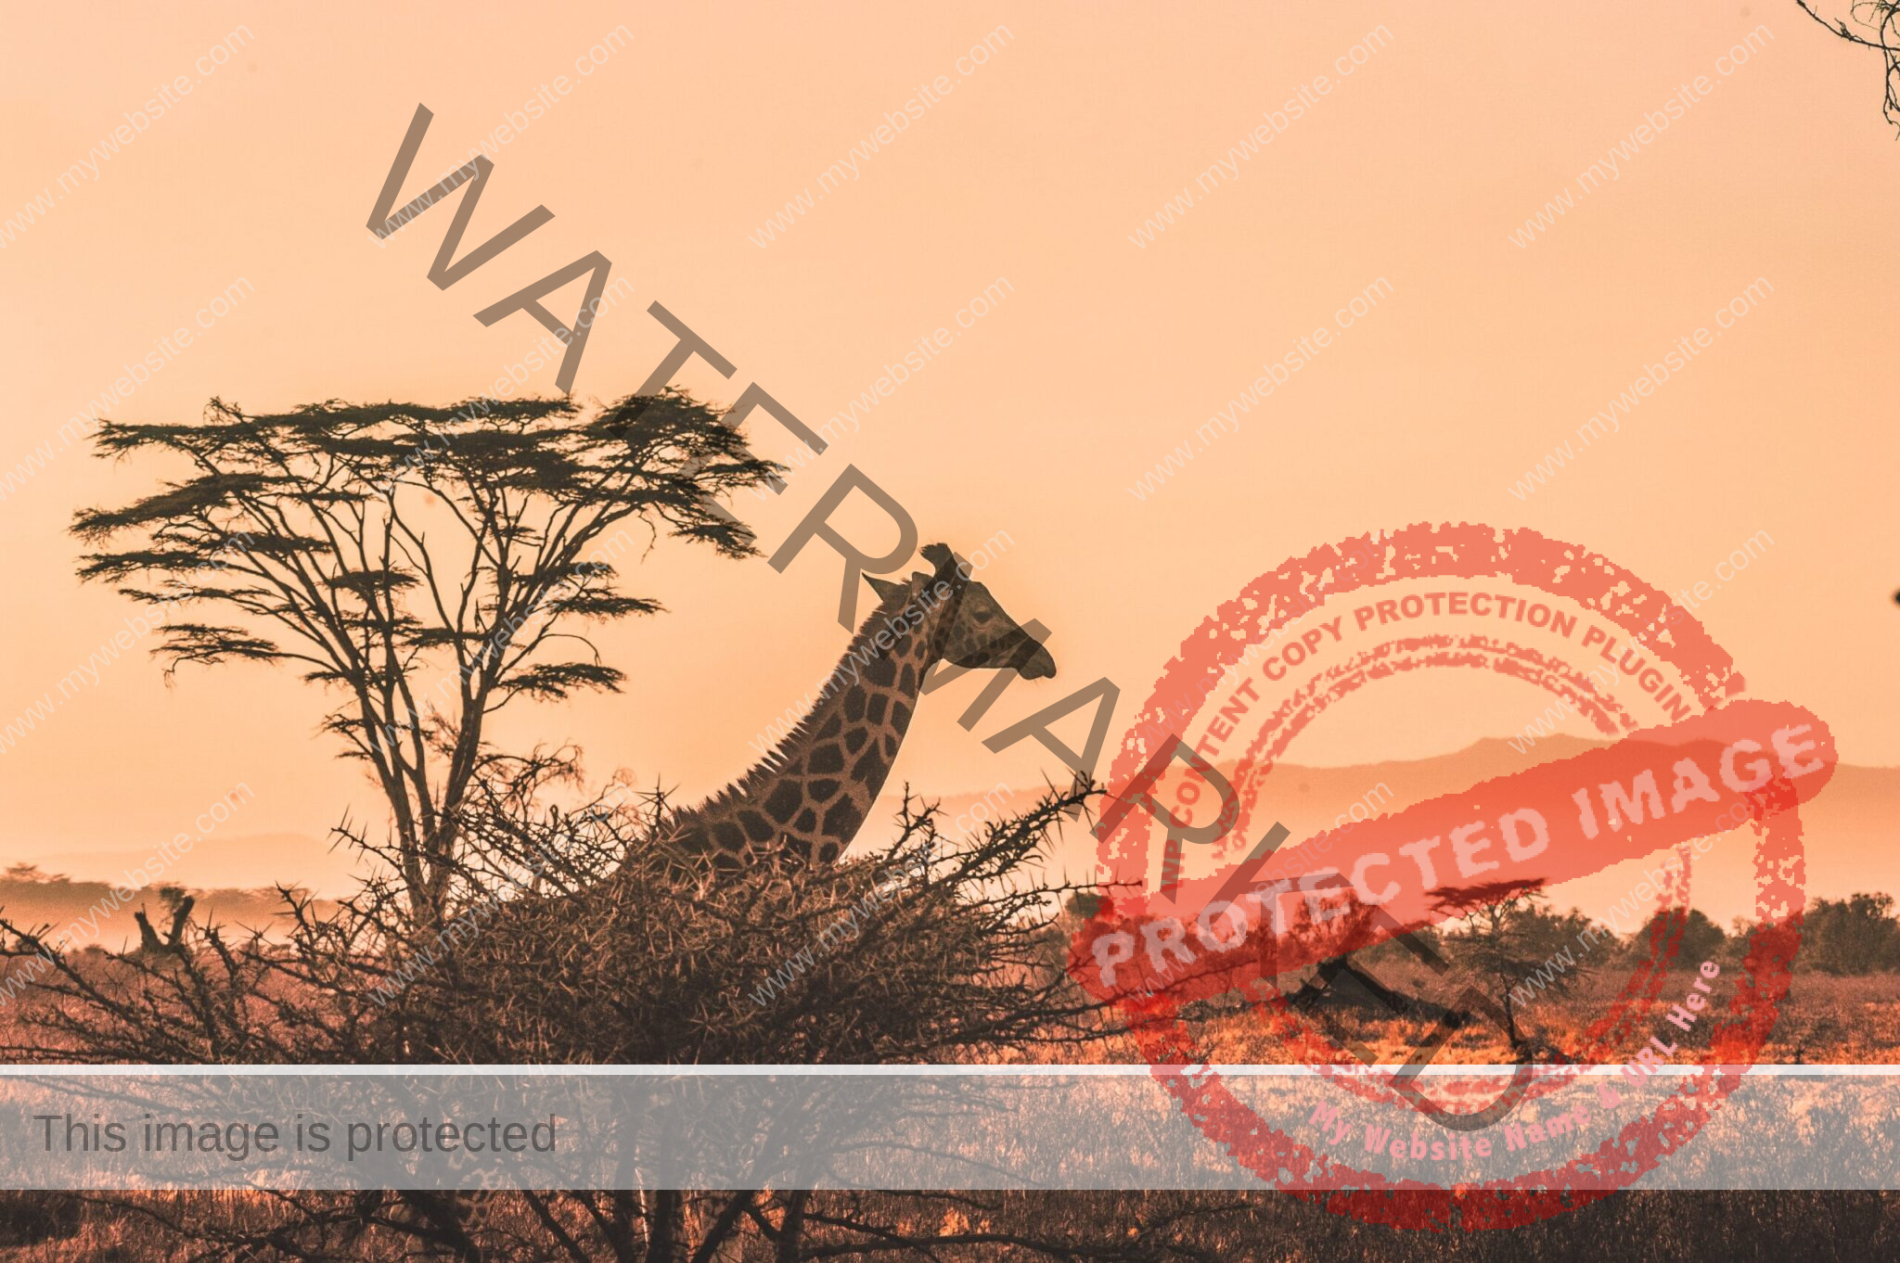 sunset on the serengeti with giraffe